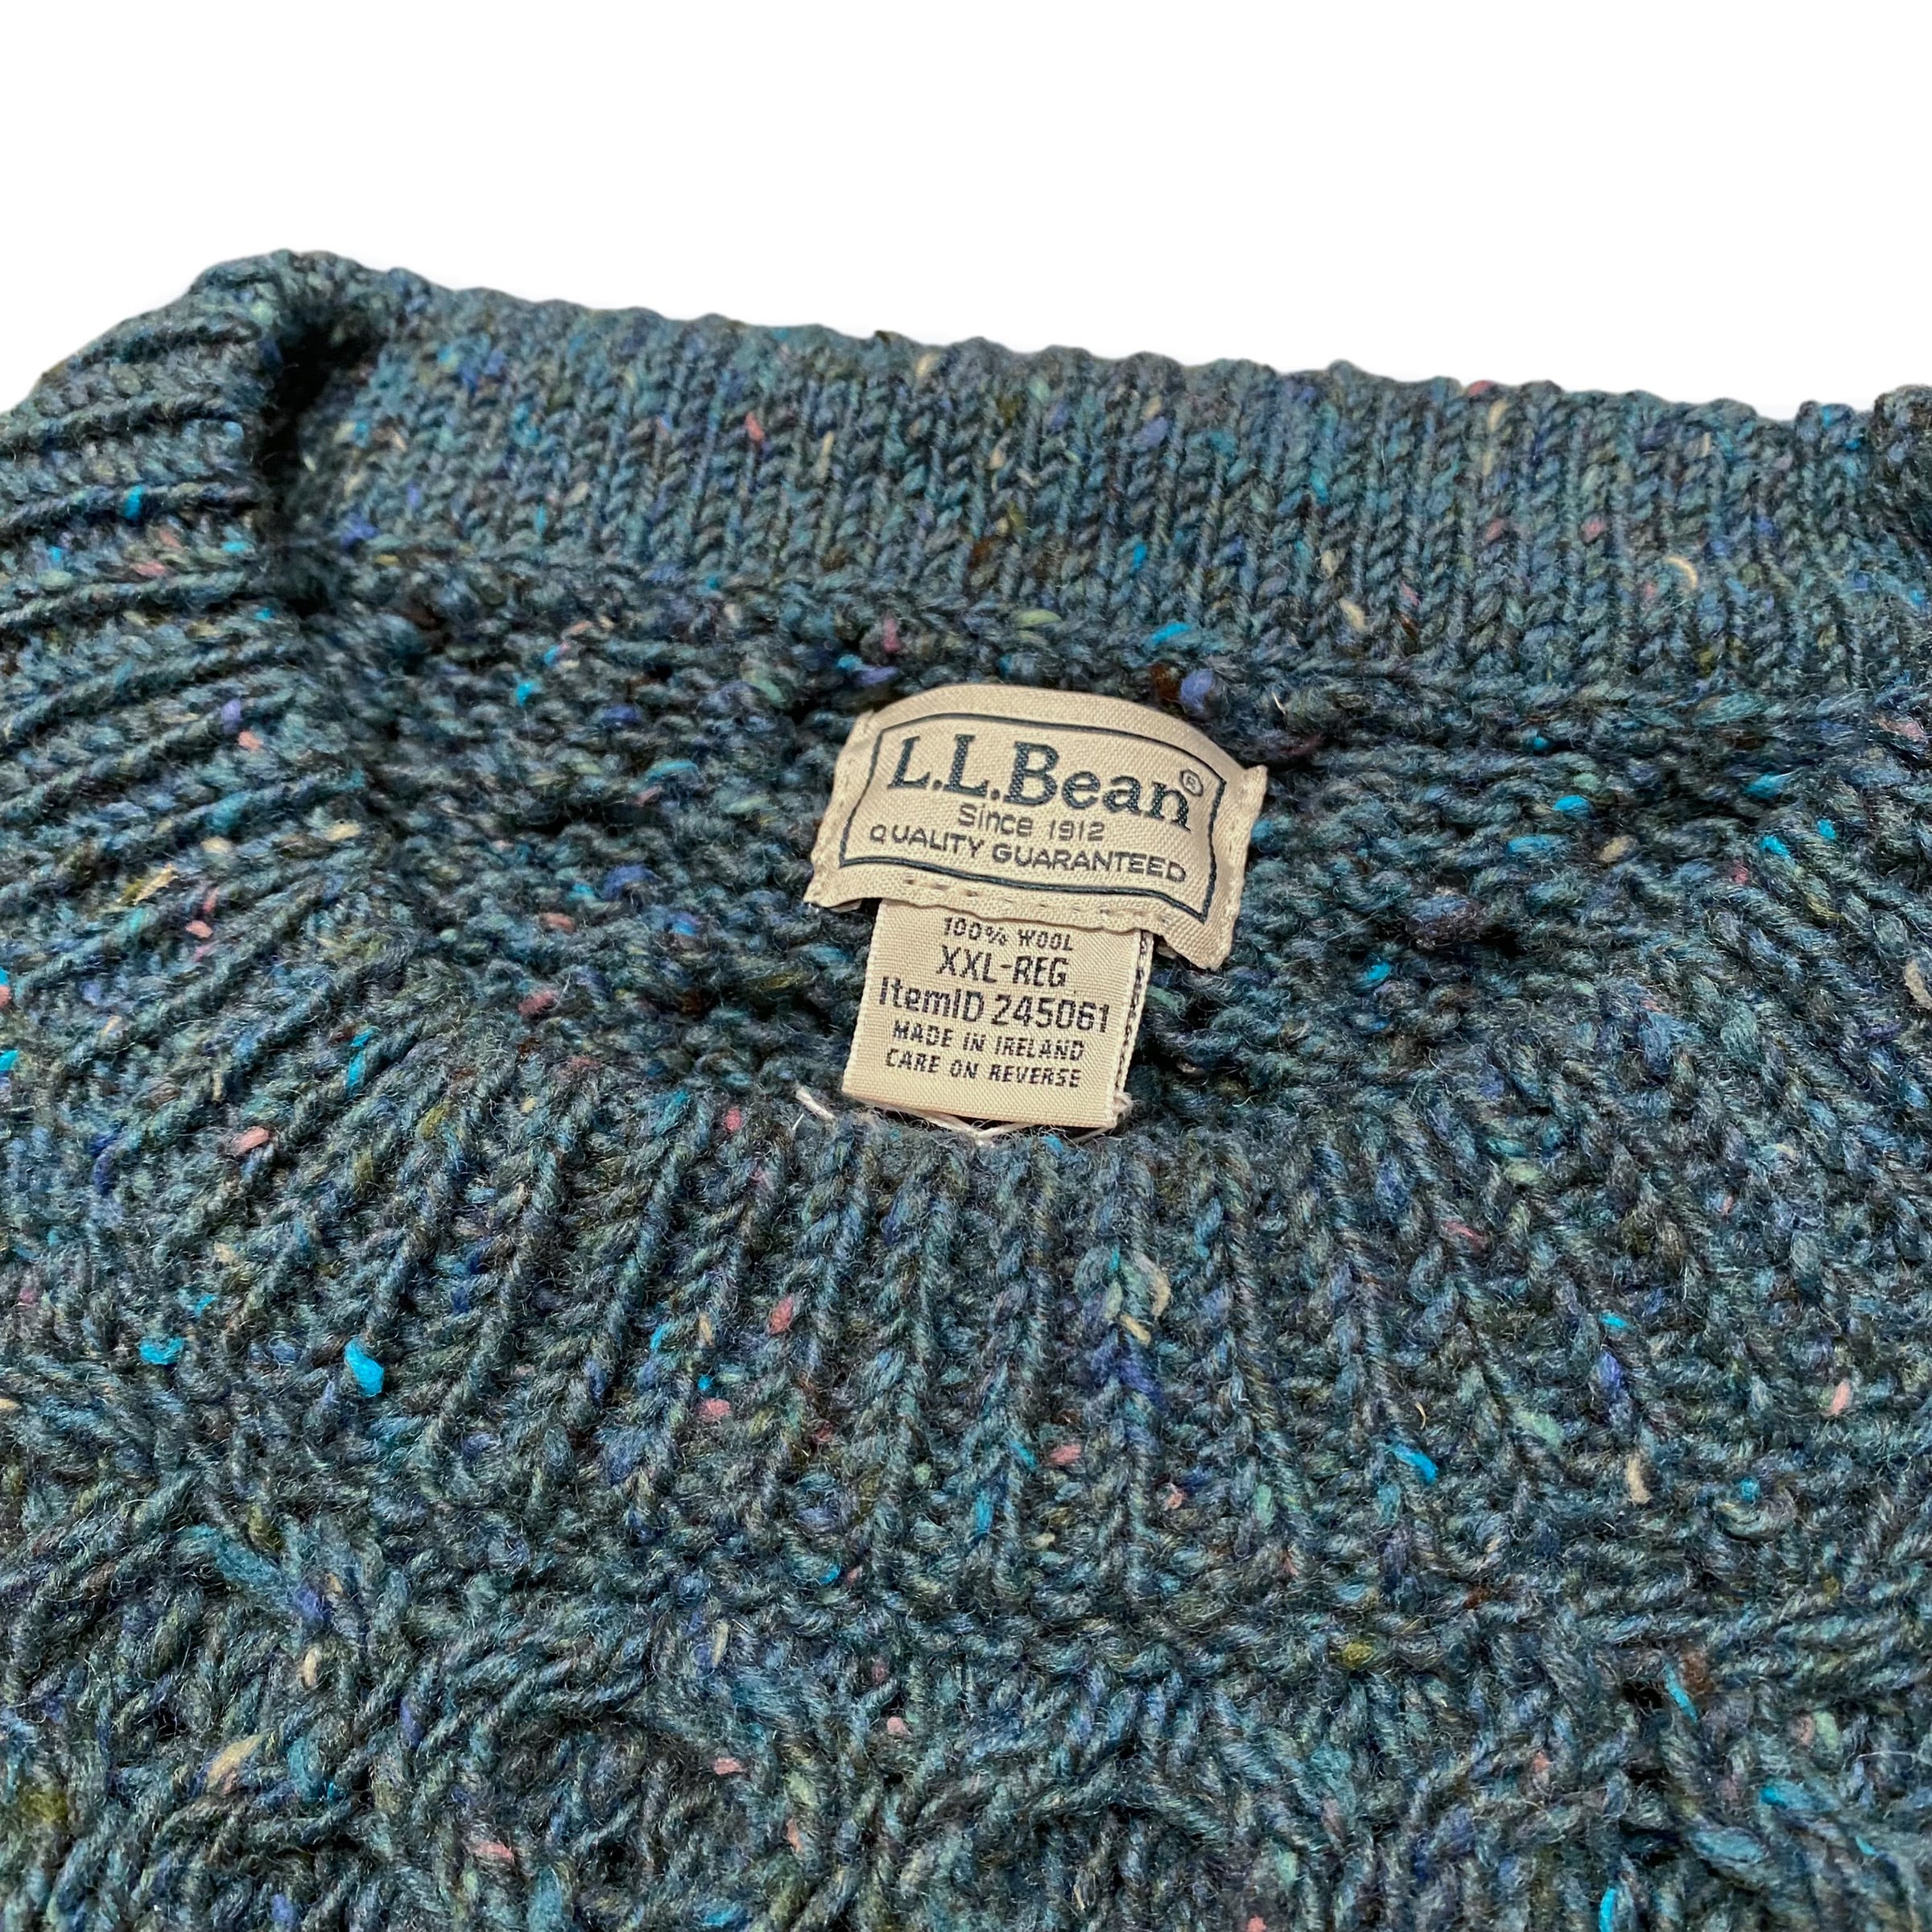 00's アイルランド製 LL Bean Fisherman Wool Knit Sweater XXL / エルエルビーン フィッシャーマンセーター  ウール ニット 古着 ヴィンテージ